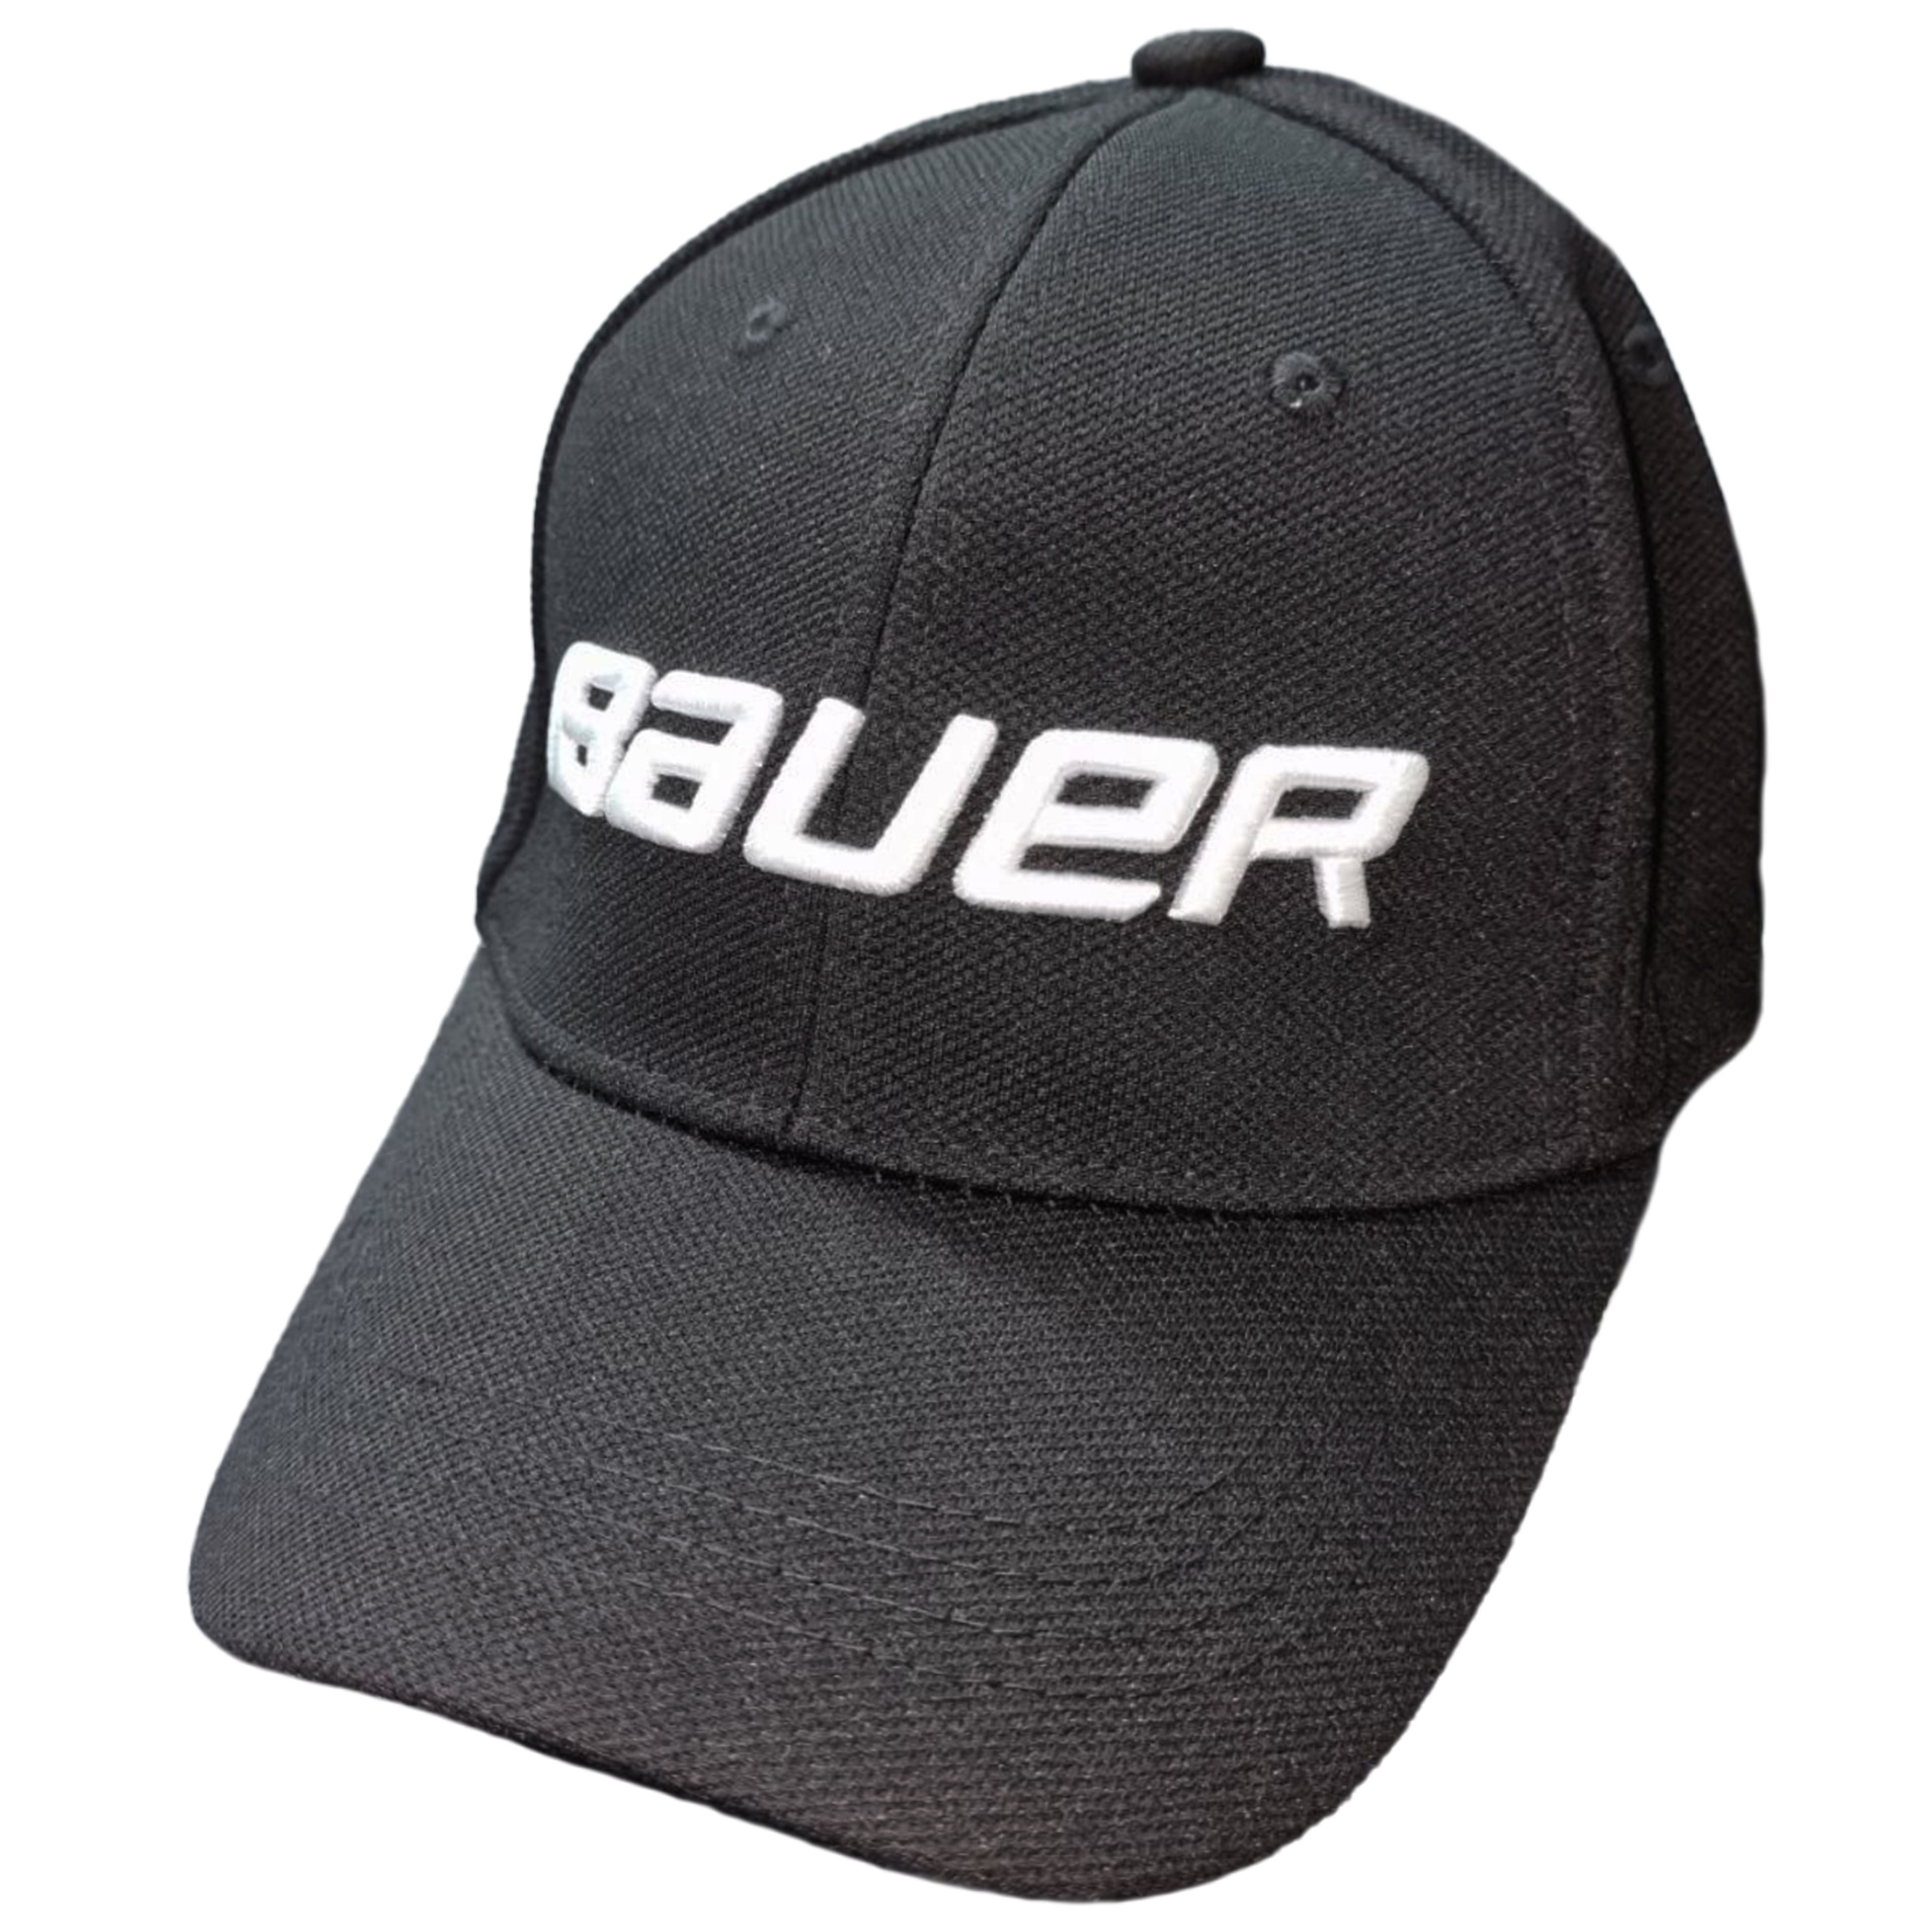 Бейсболка с логотипом Bauer черная 54-55